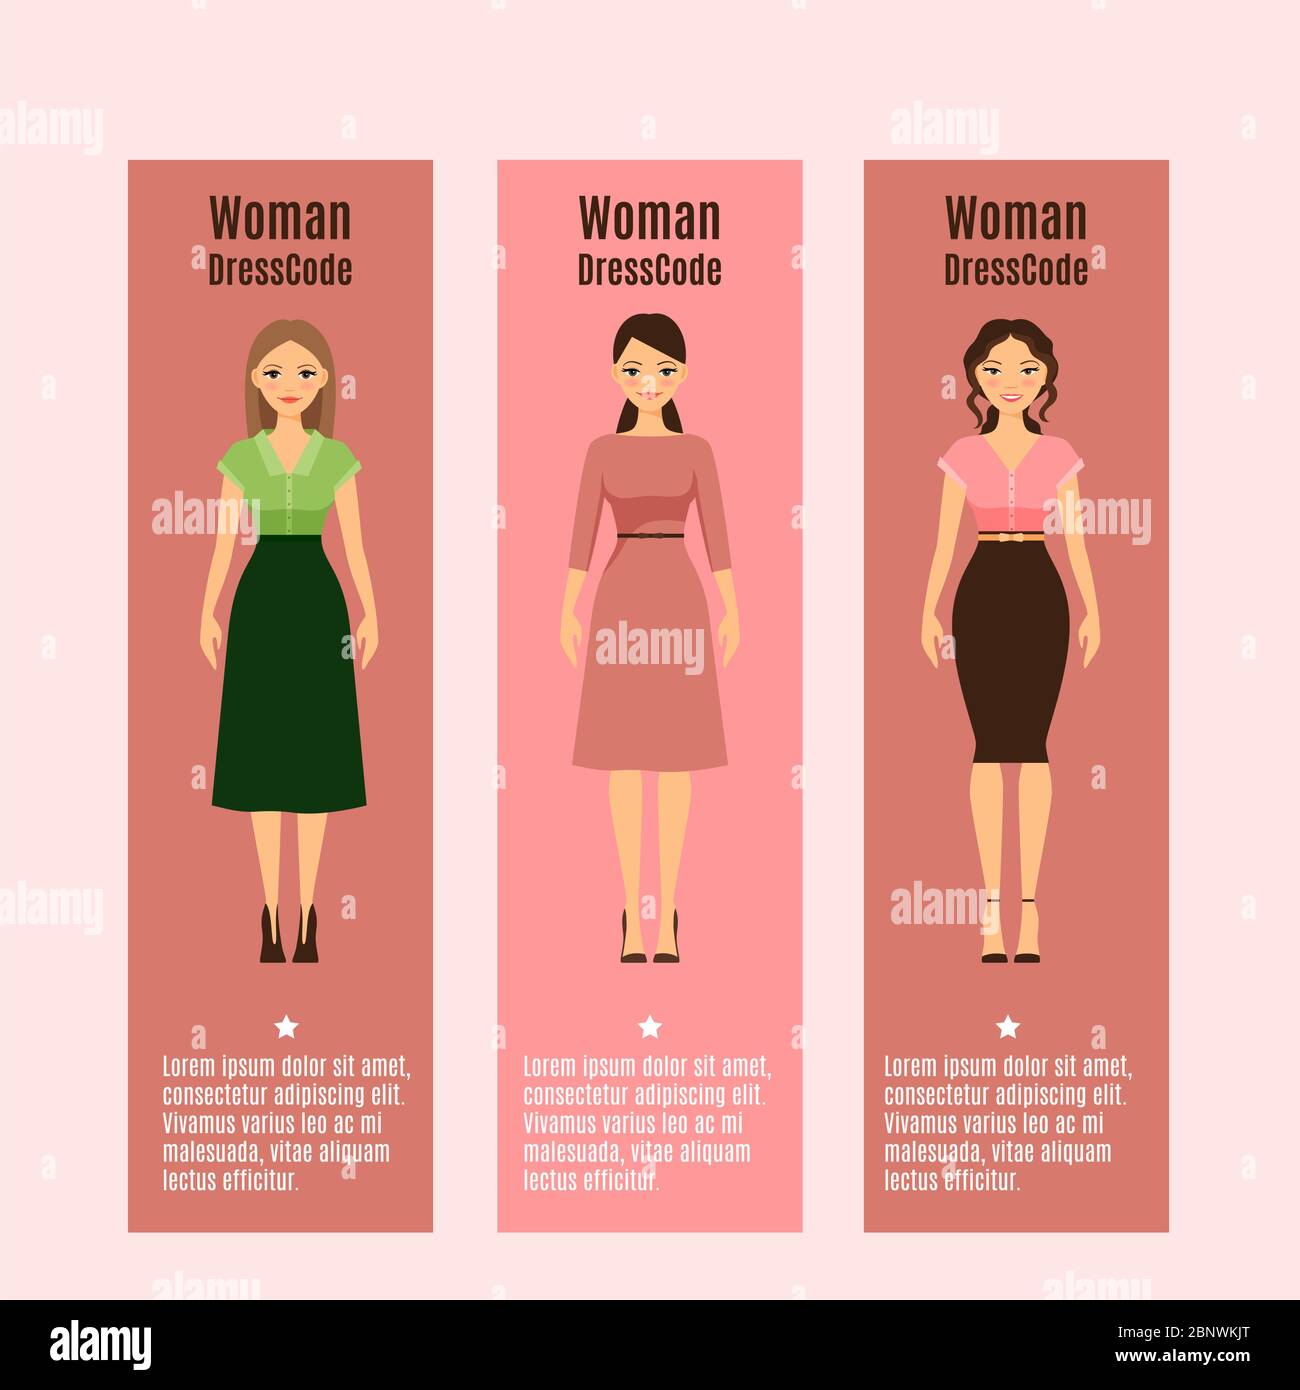 Woman DressCode vertical flyers set ...